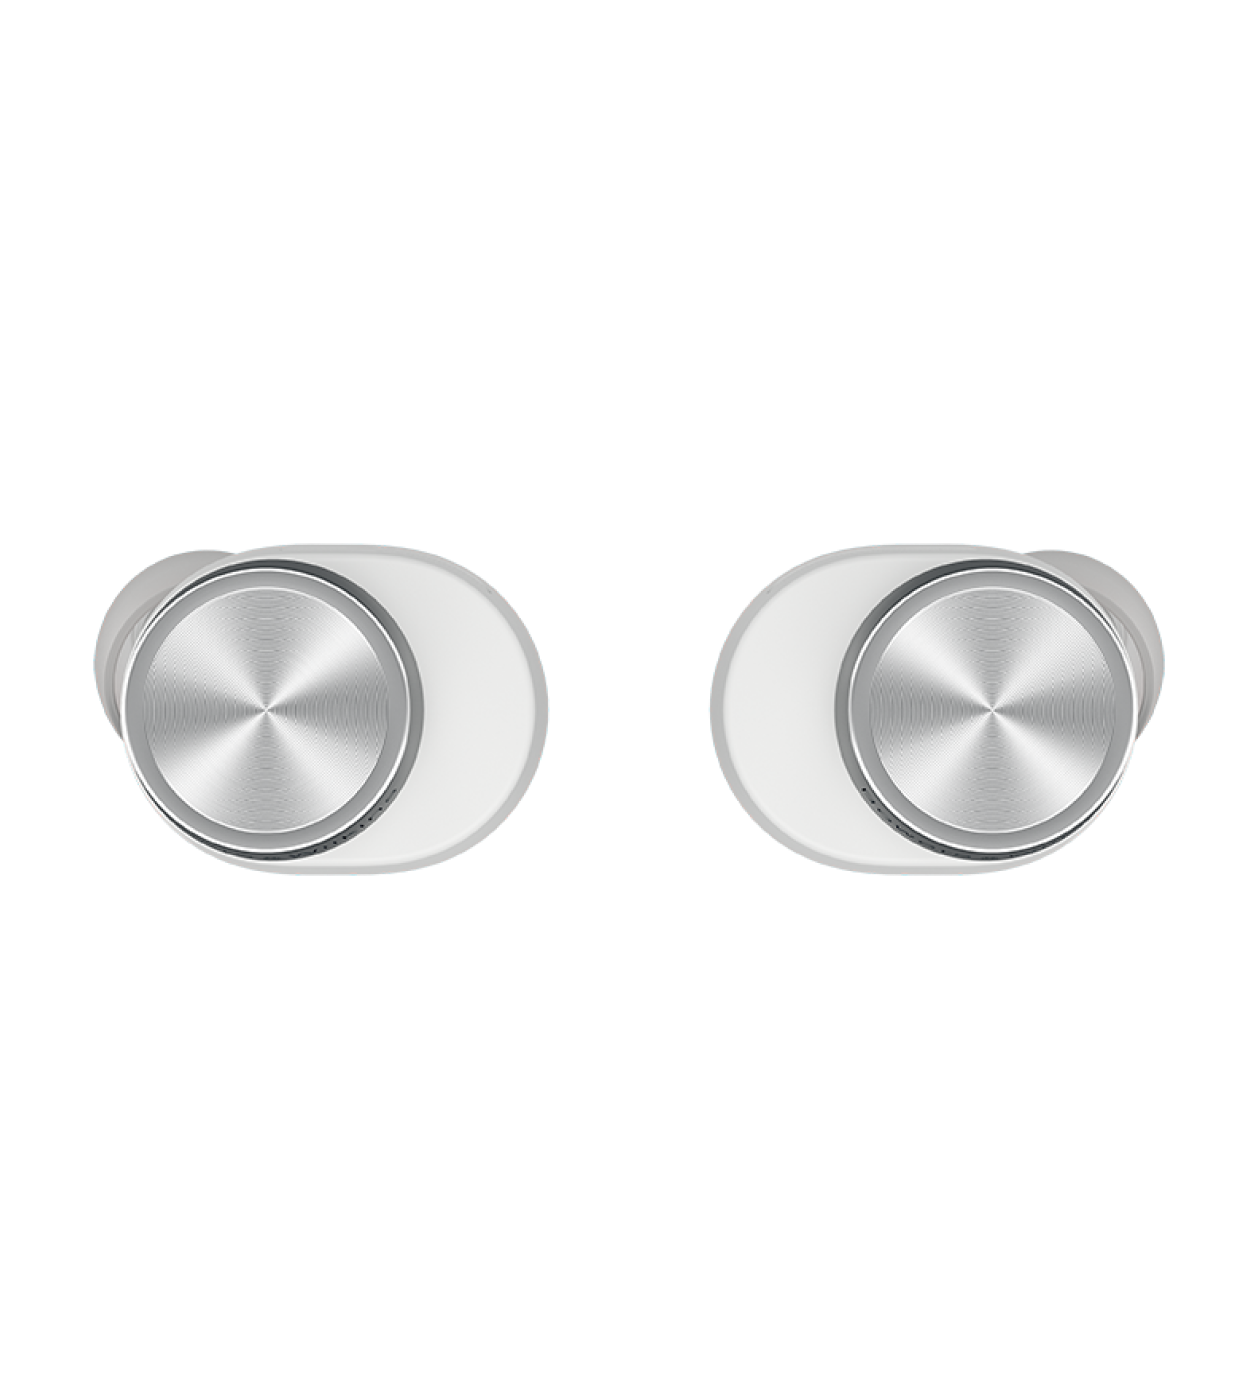 אוזניות Bluetooth אלחוטיות דגם PI5 S2 מבית Bowers & Wilkins צבע Cloud Grey